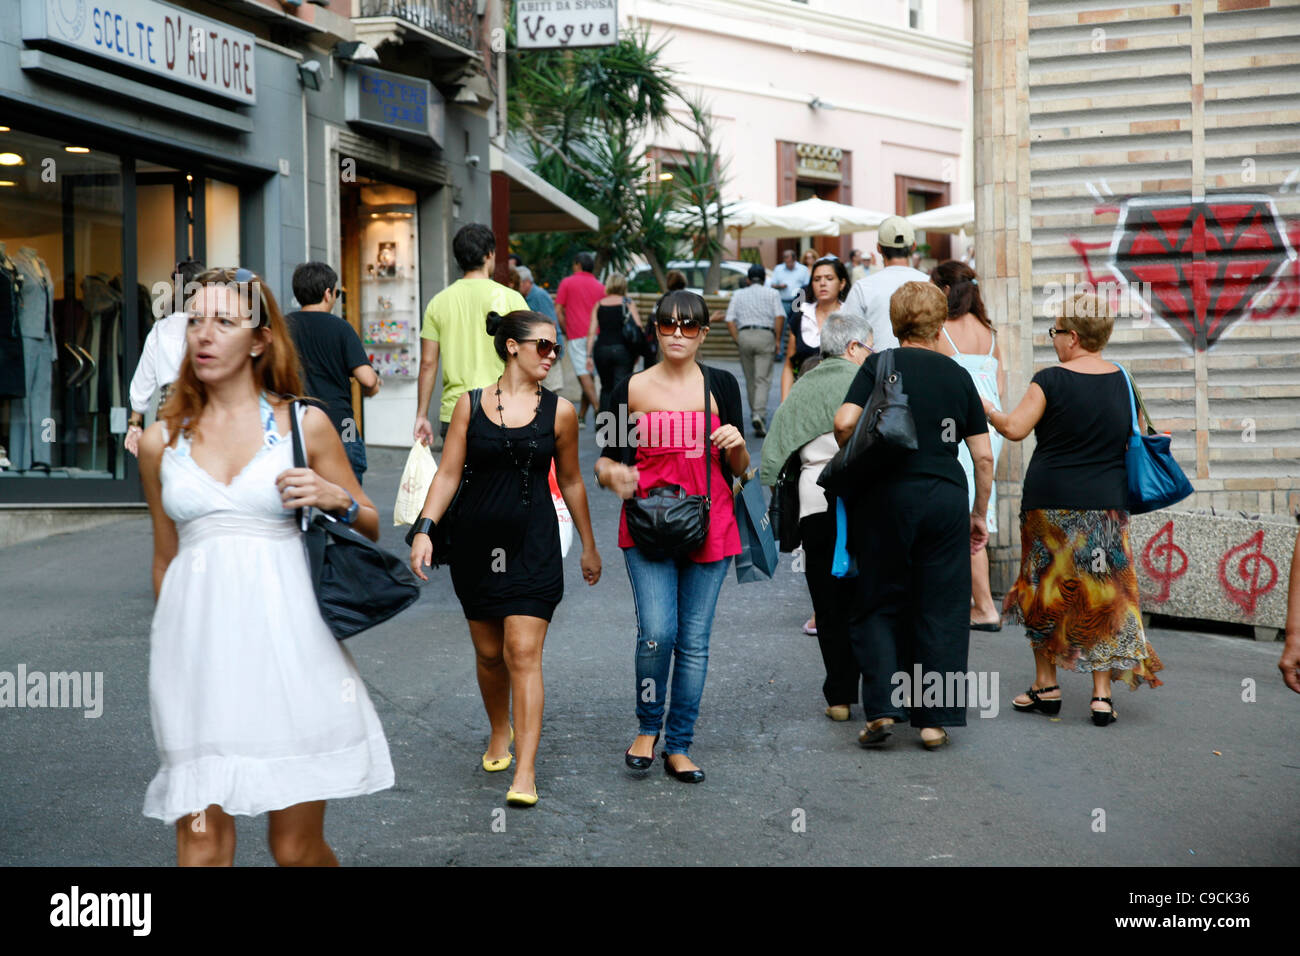 La gente a piedi la Via Giuseppe Manno, una strada pedonale con numerosi negozi, Cagliari, Sardegna, Italia. Foto Stock